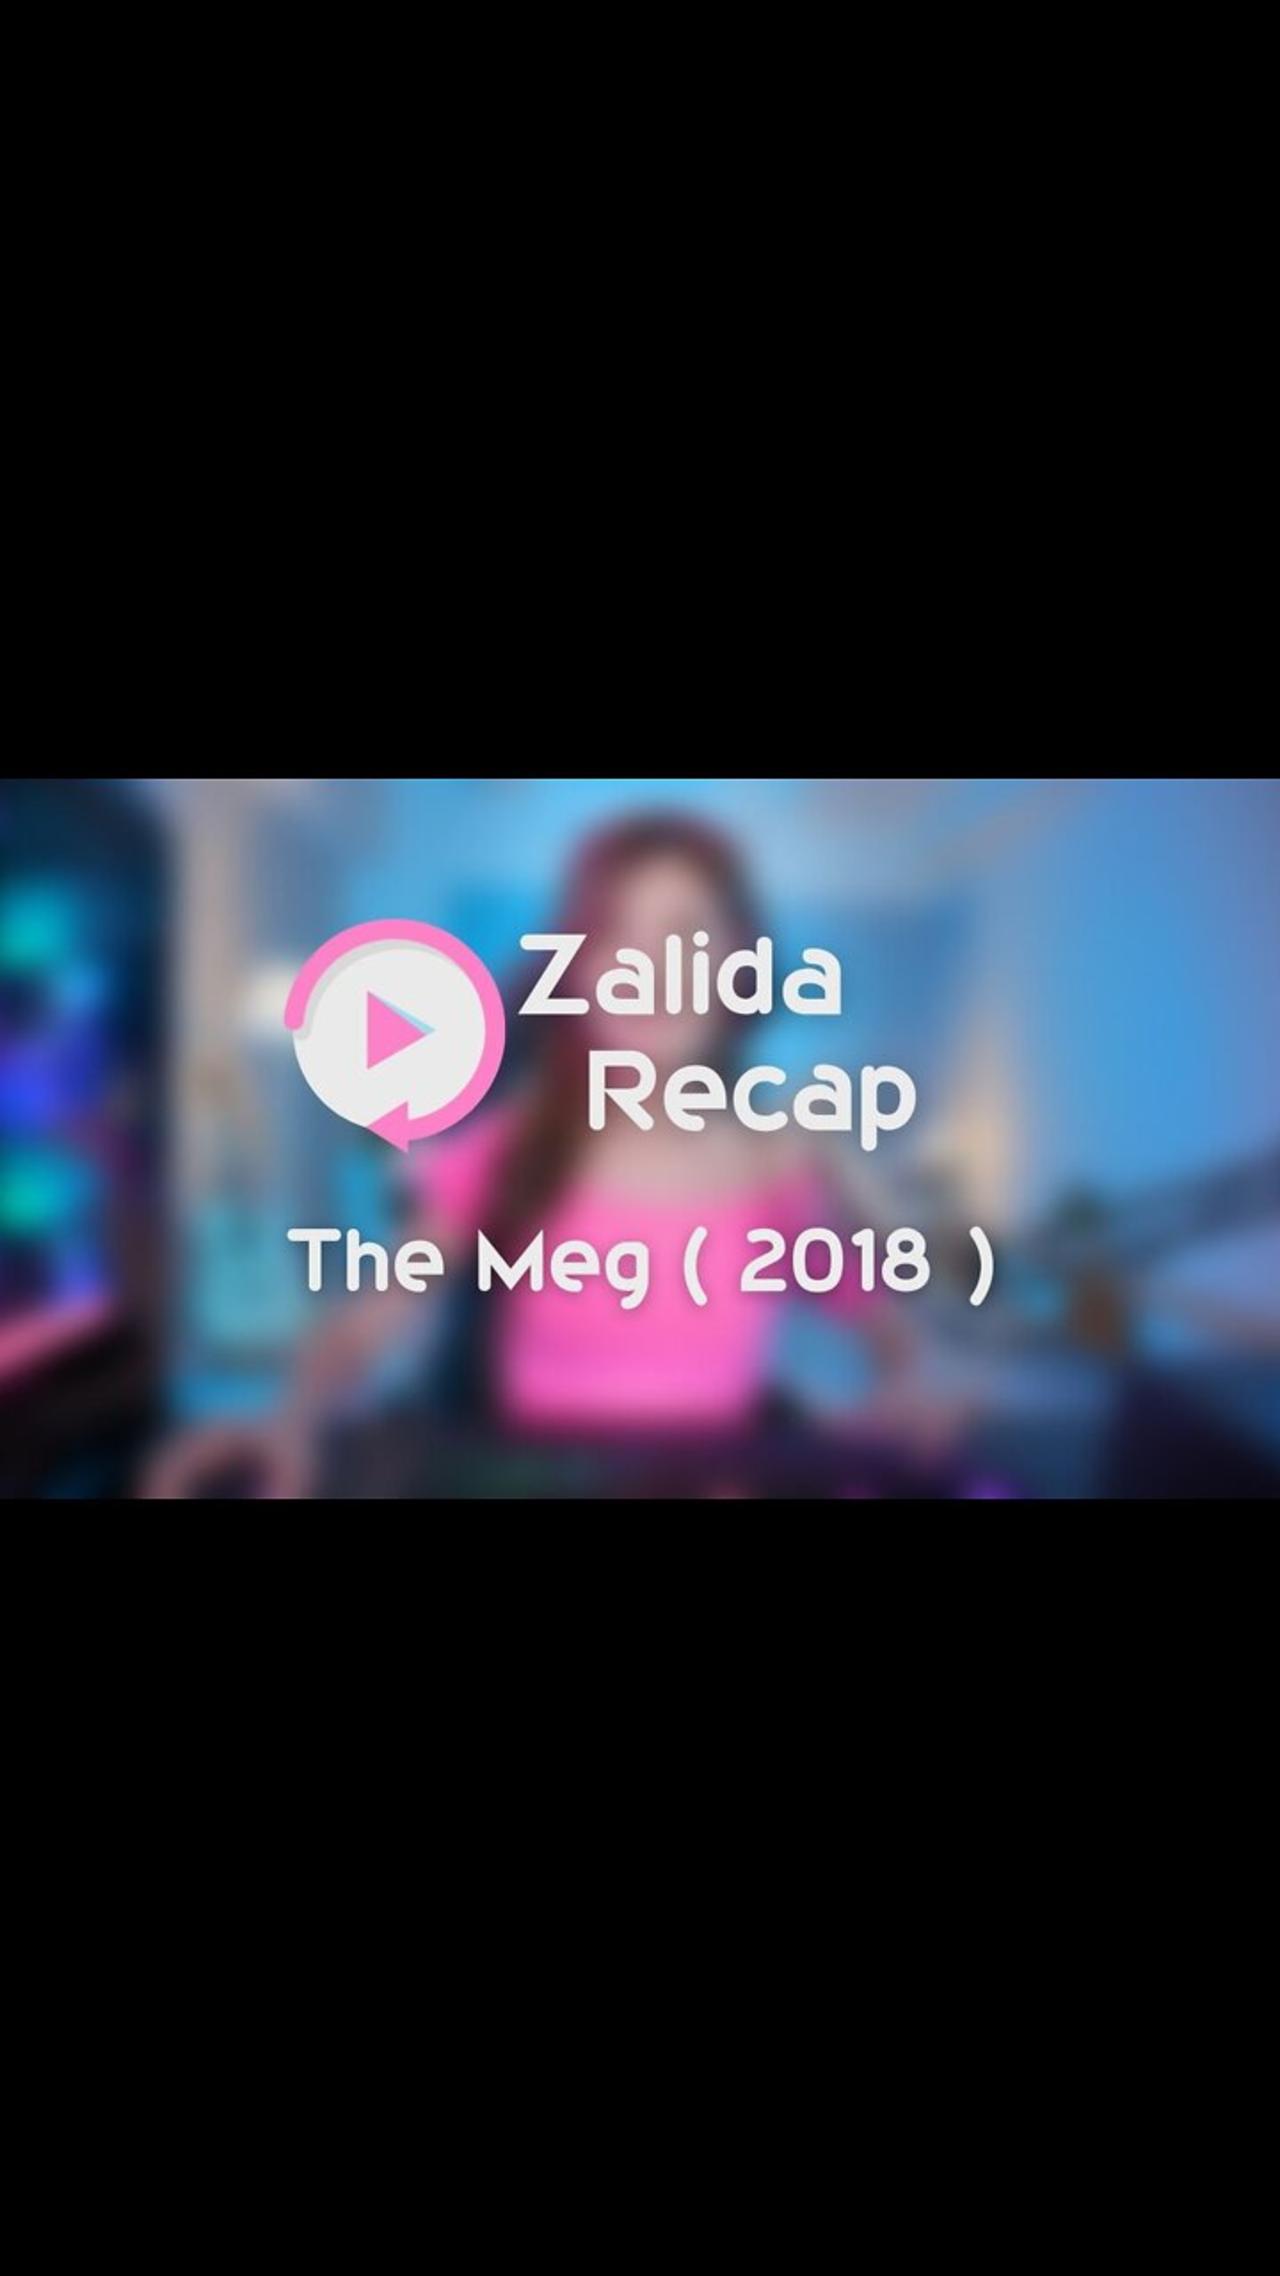 The Meg ( 2018 ) - Movie Recap Summary